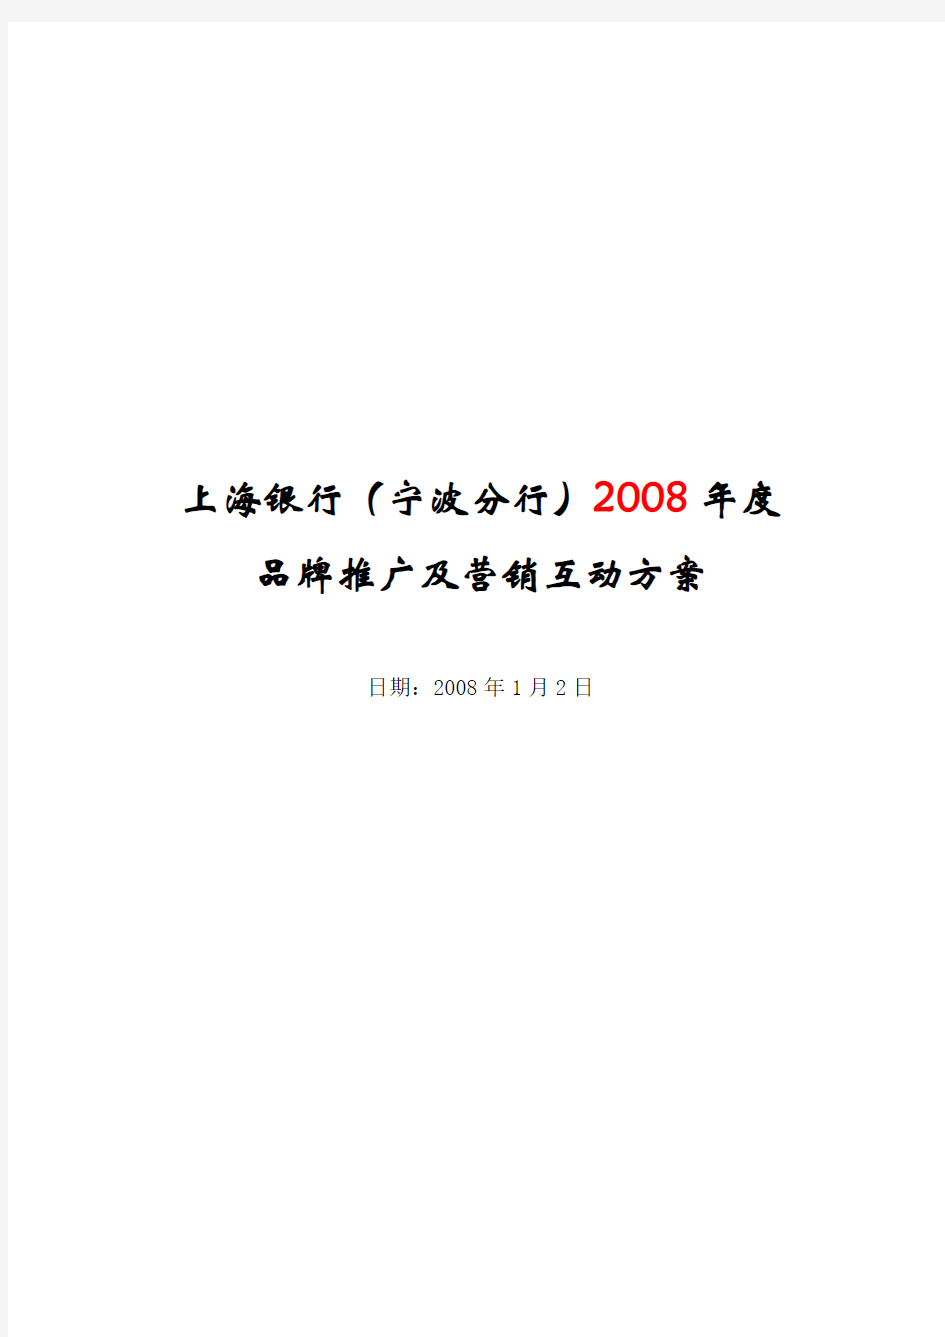 2008年度上海银行宁波分行品牌推广及营销互动方案